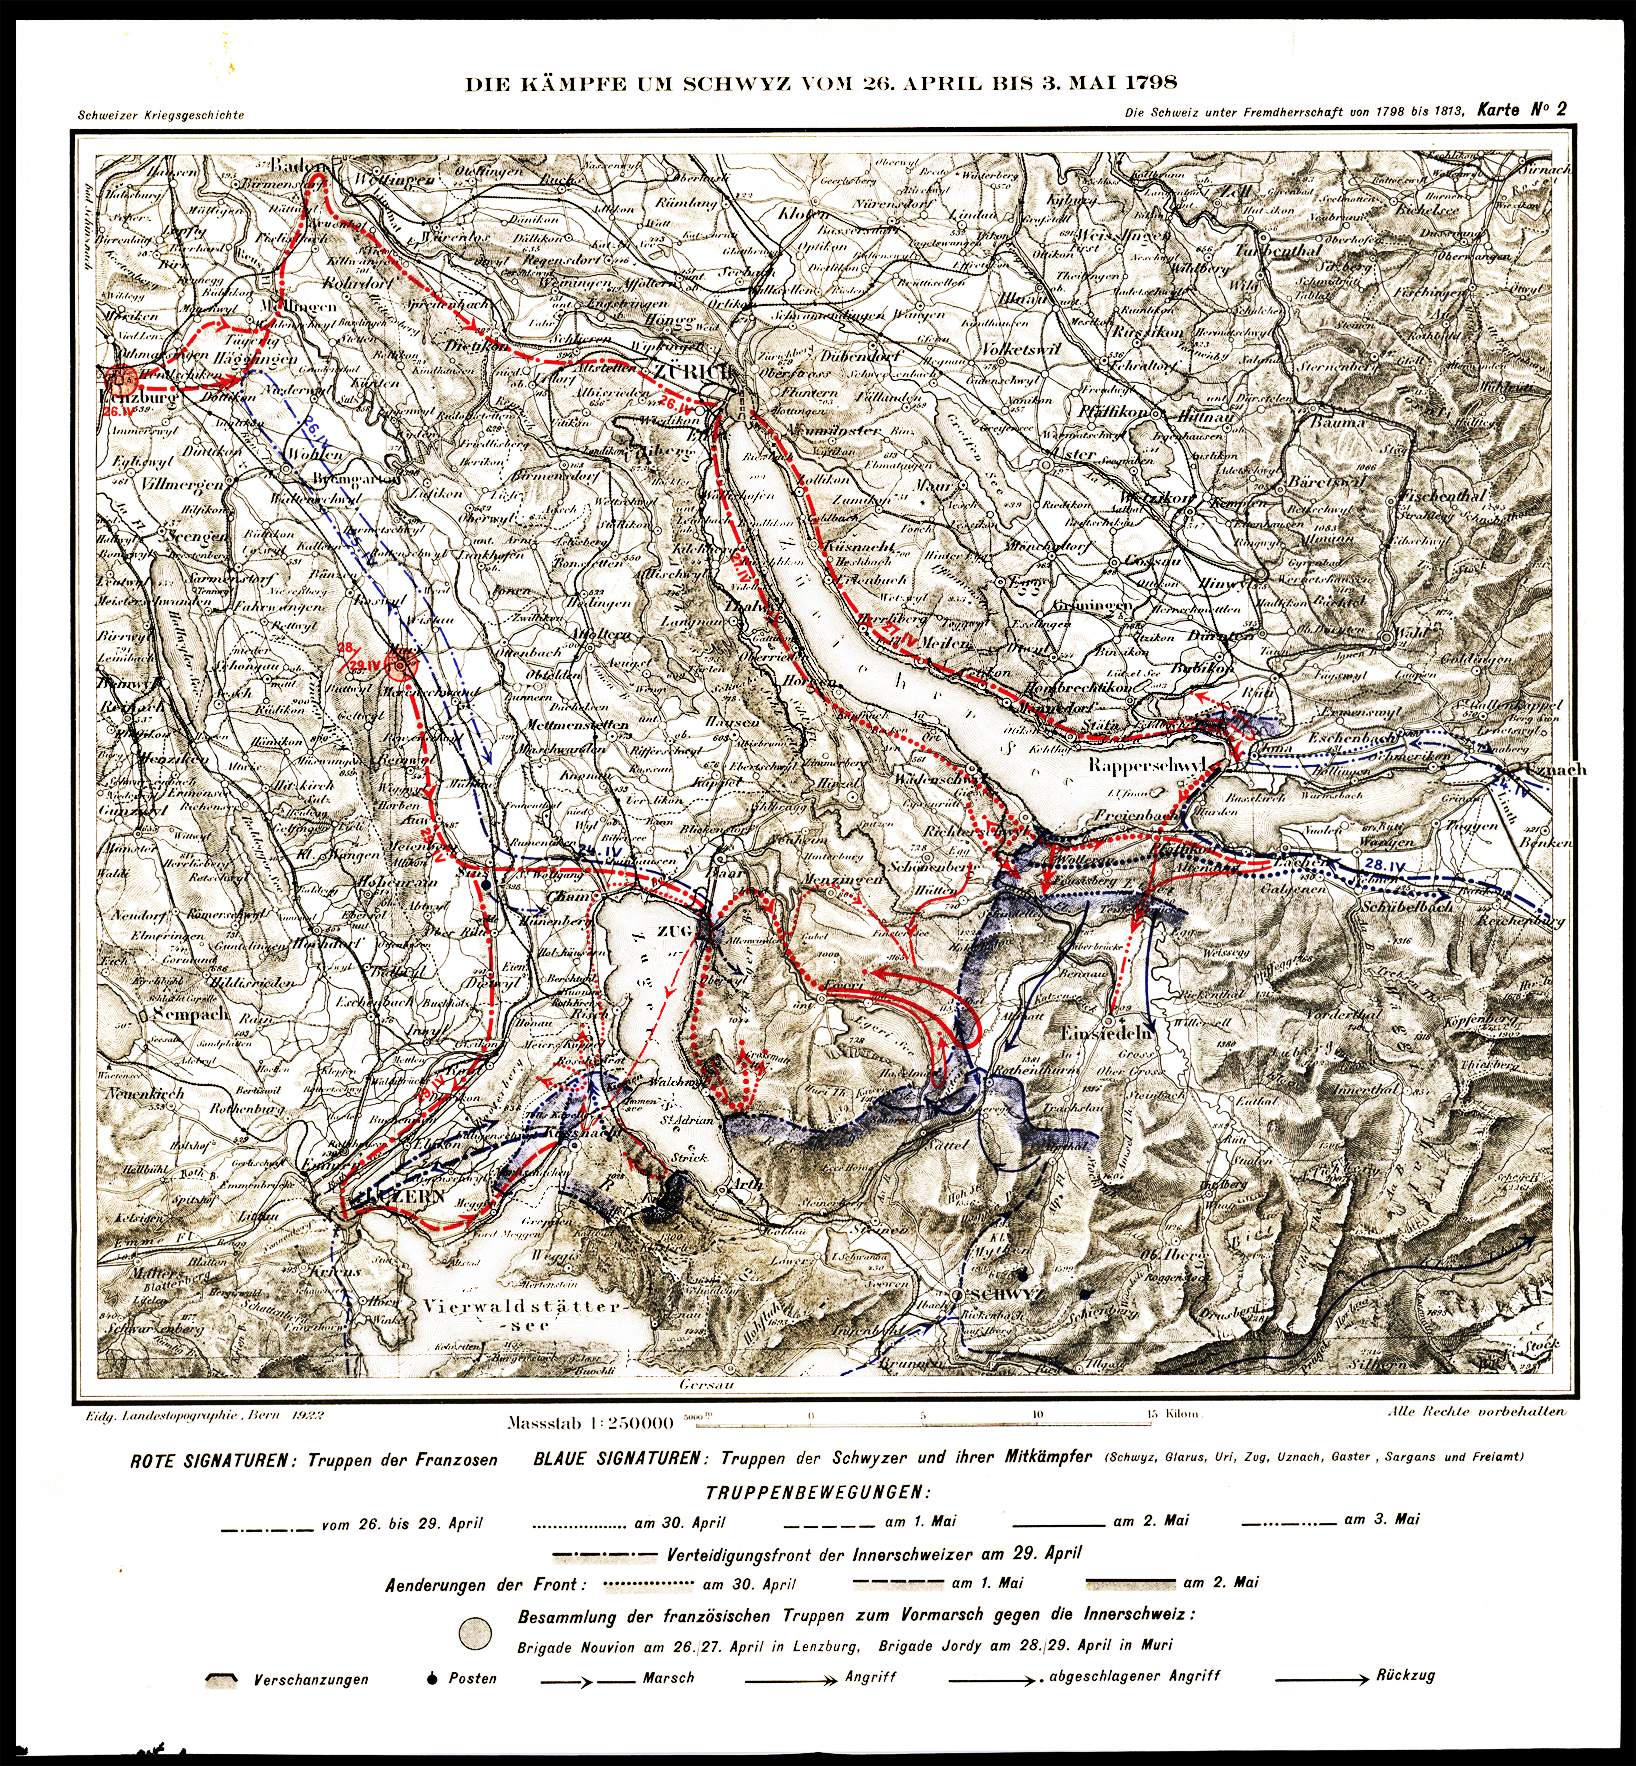 Referenz: kampfe-um-schwyz-26-april-3-mai-1798-militarstrategische-karte